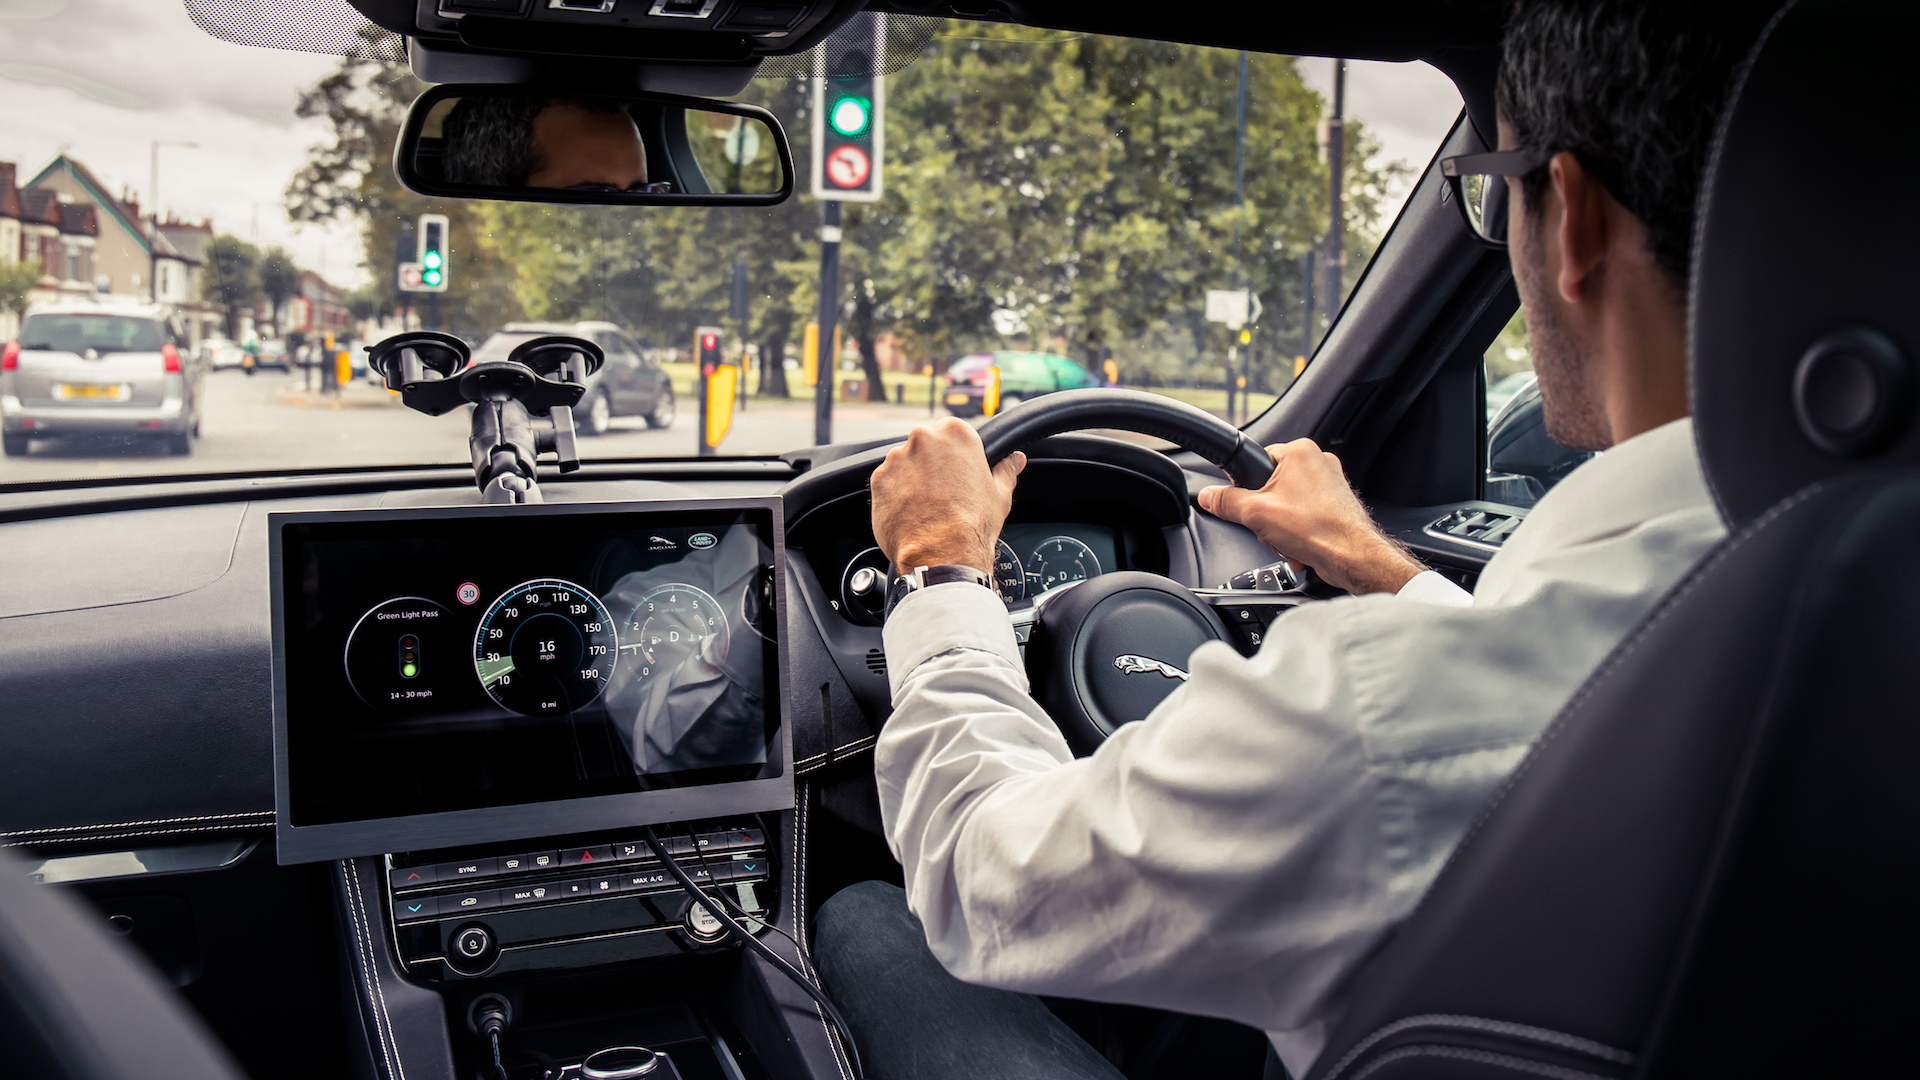 Jaguar-Land Rover Green Light Optimal Speed Advisory system